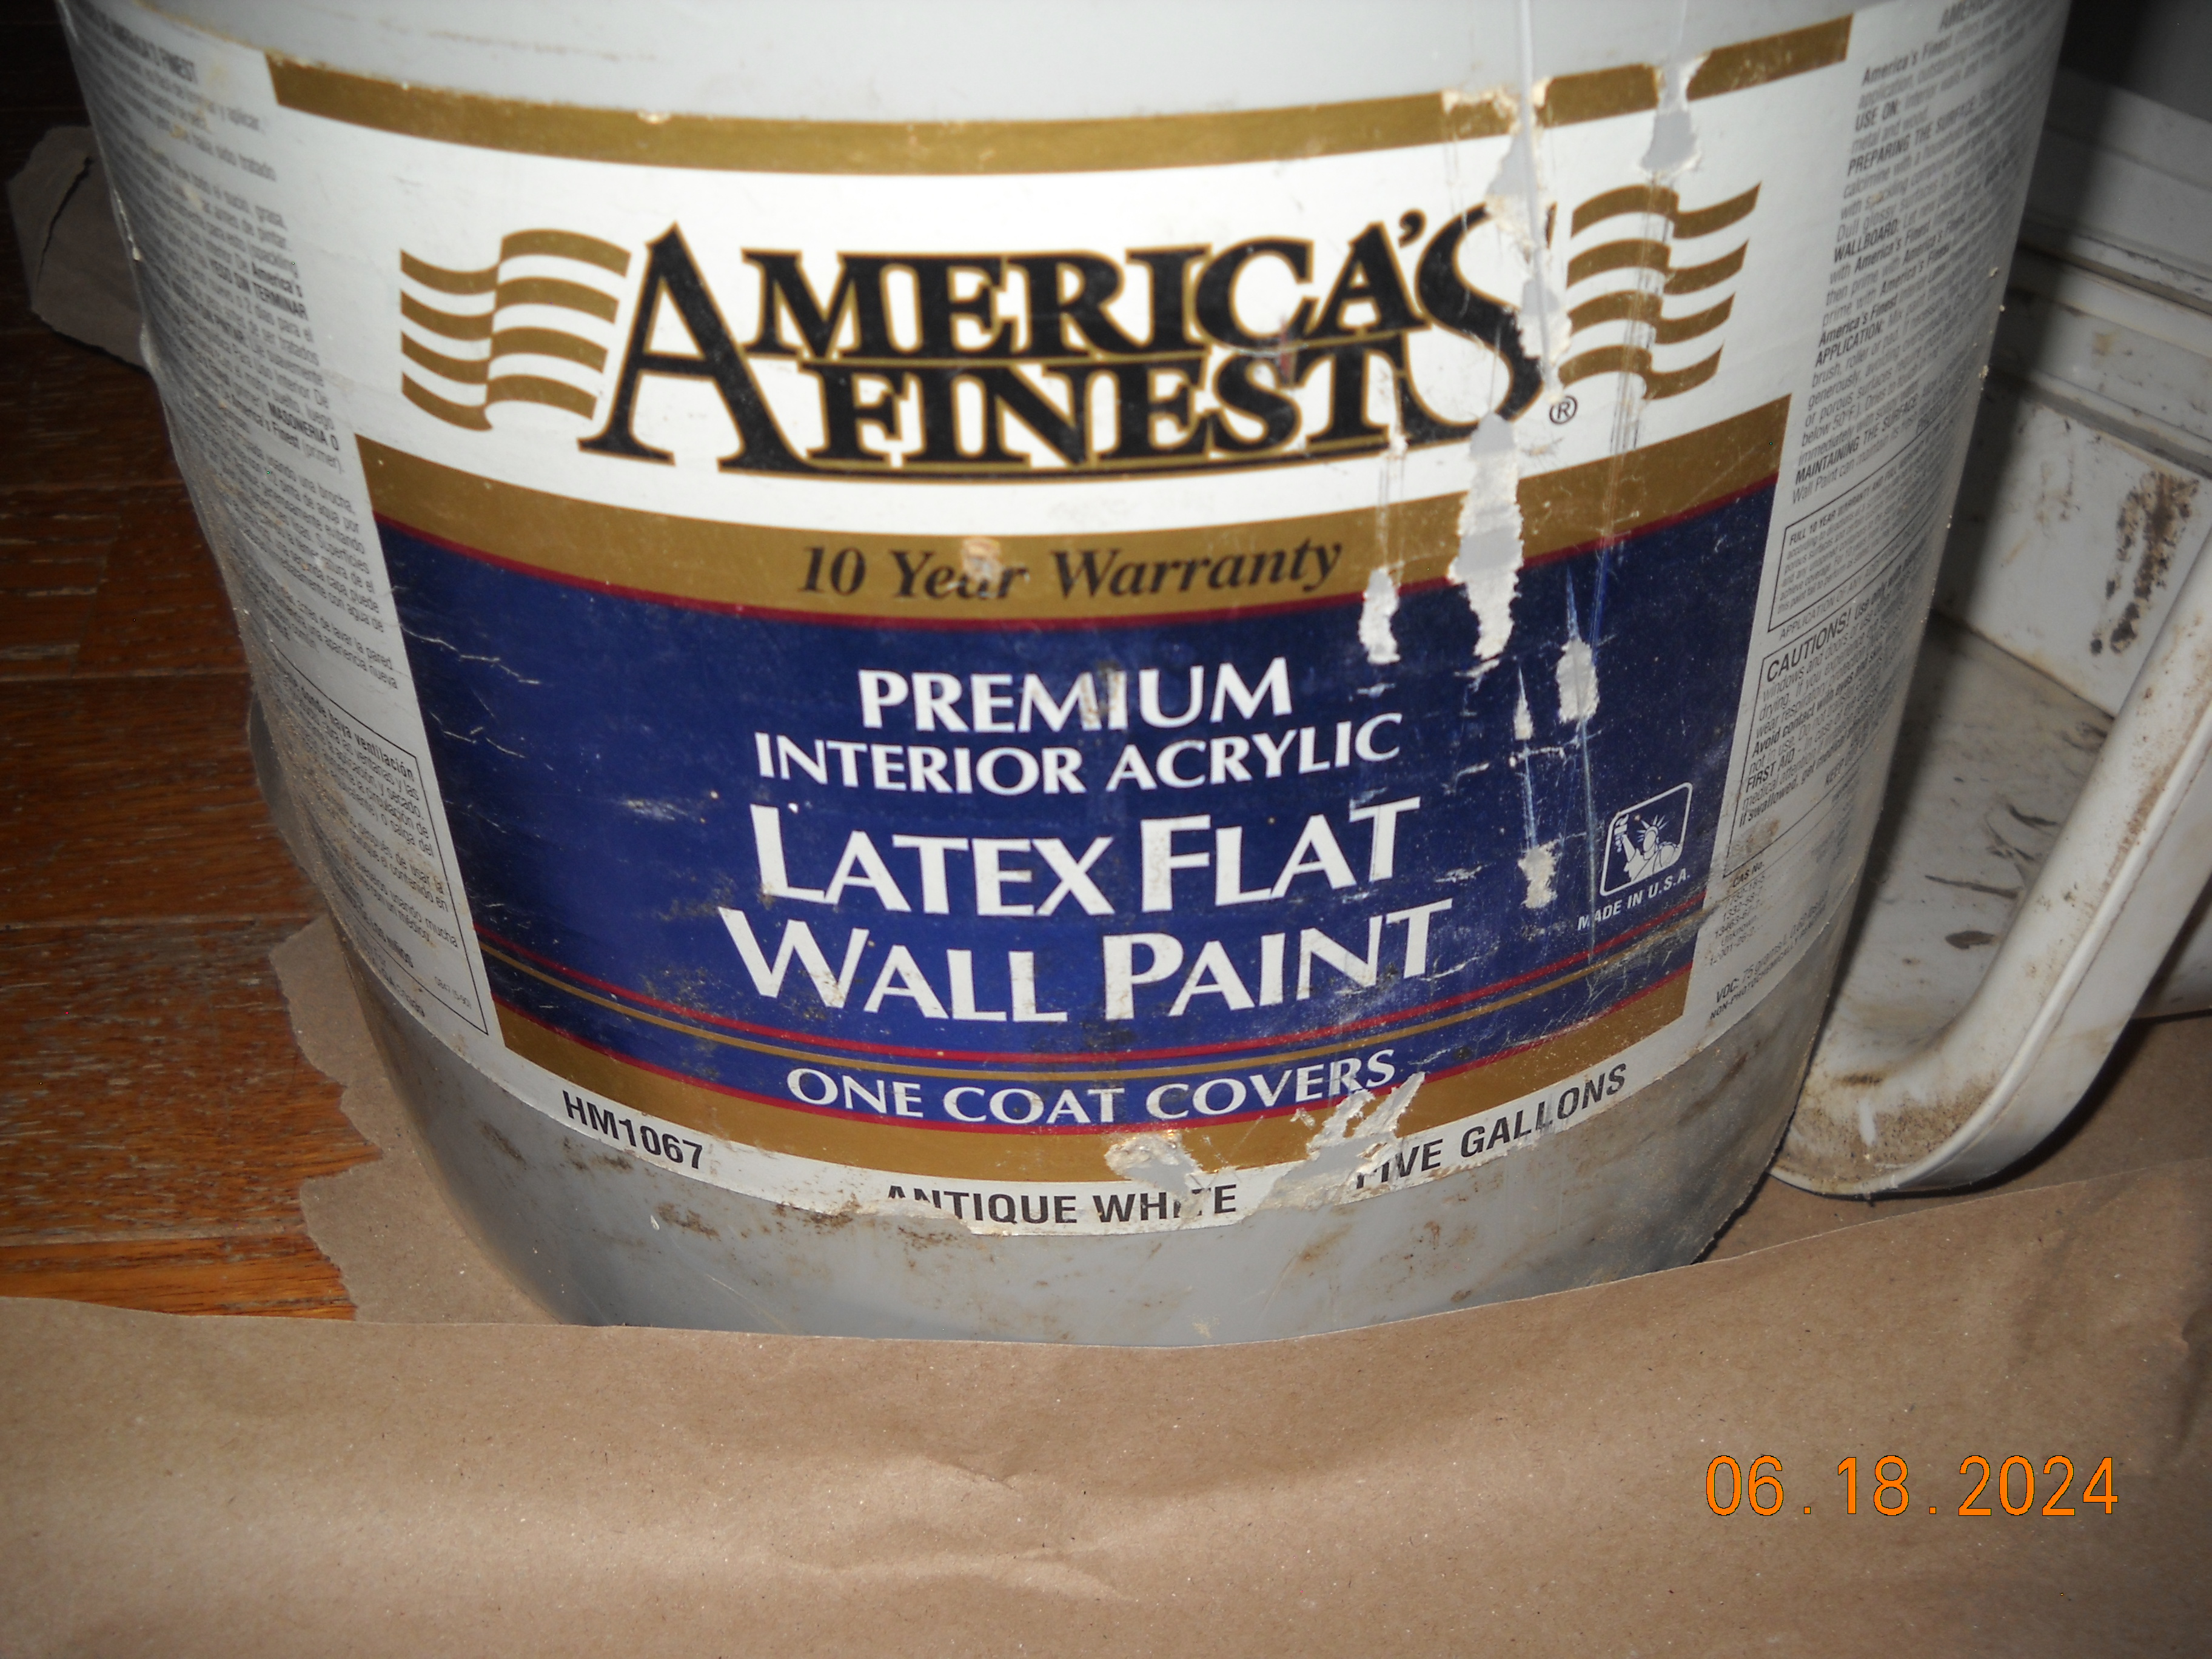 NOT mold proof/waterproof paint for walls/floor